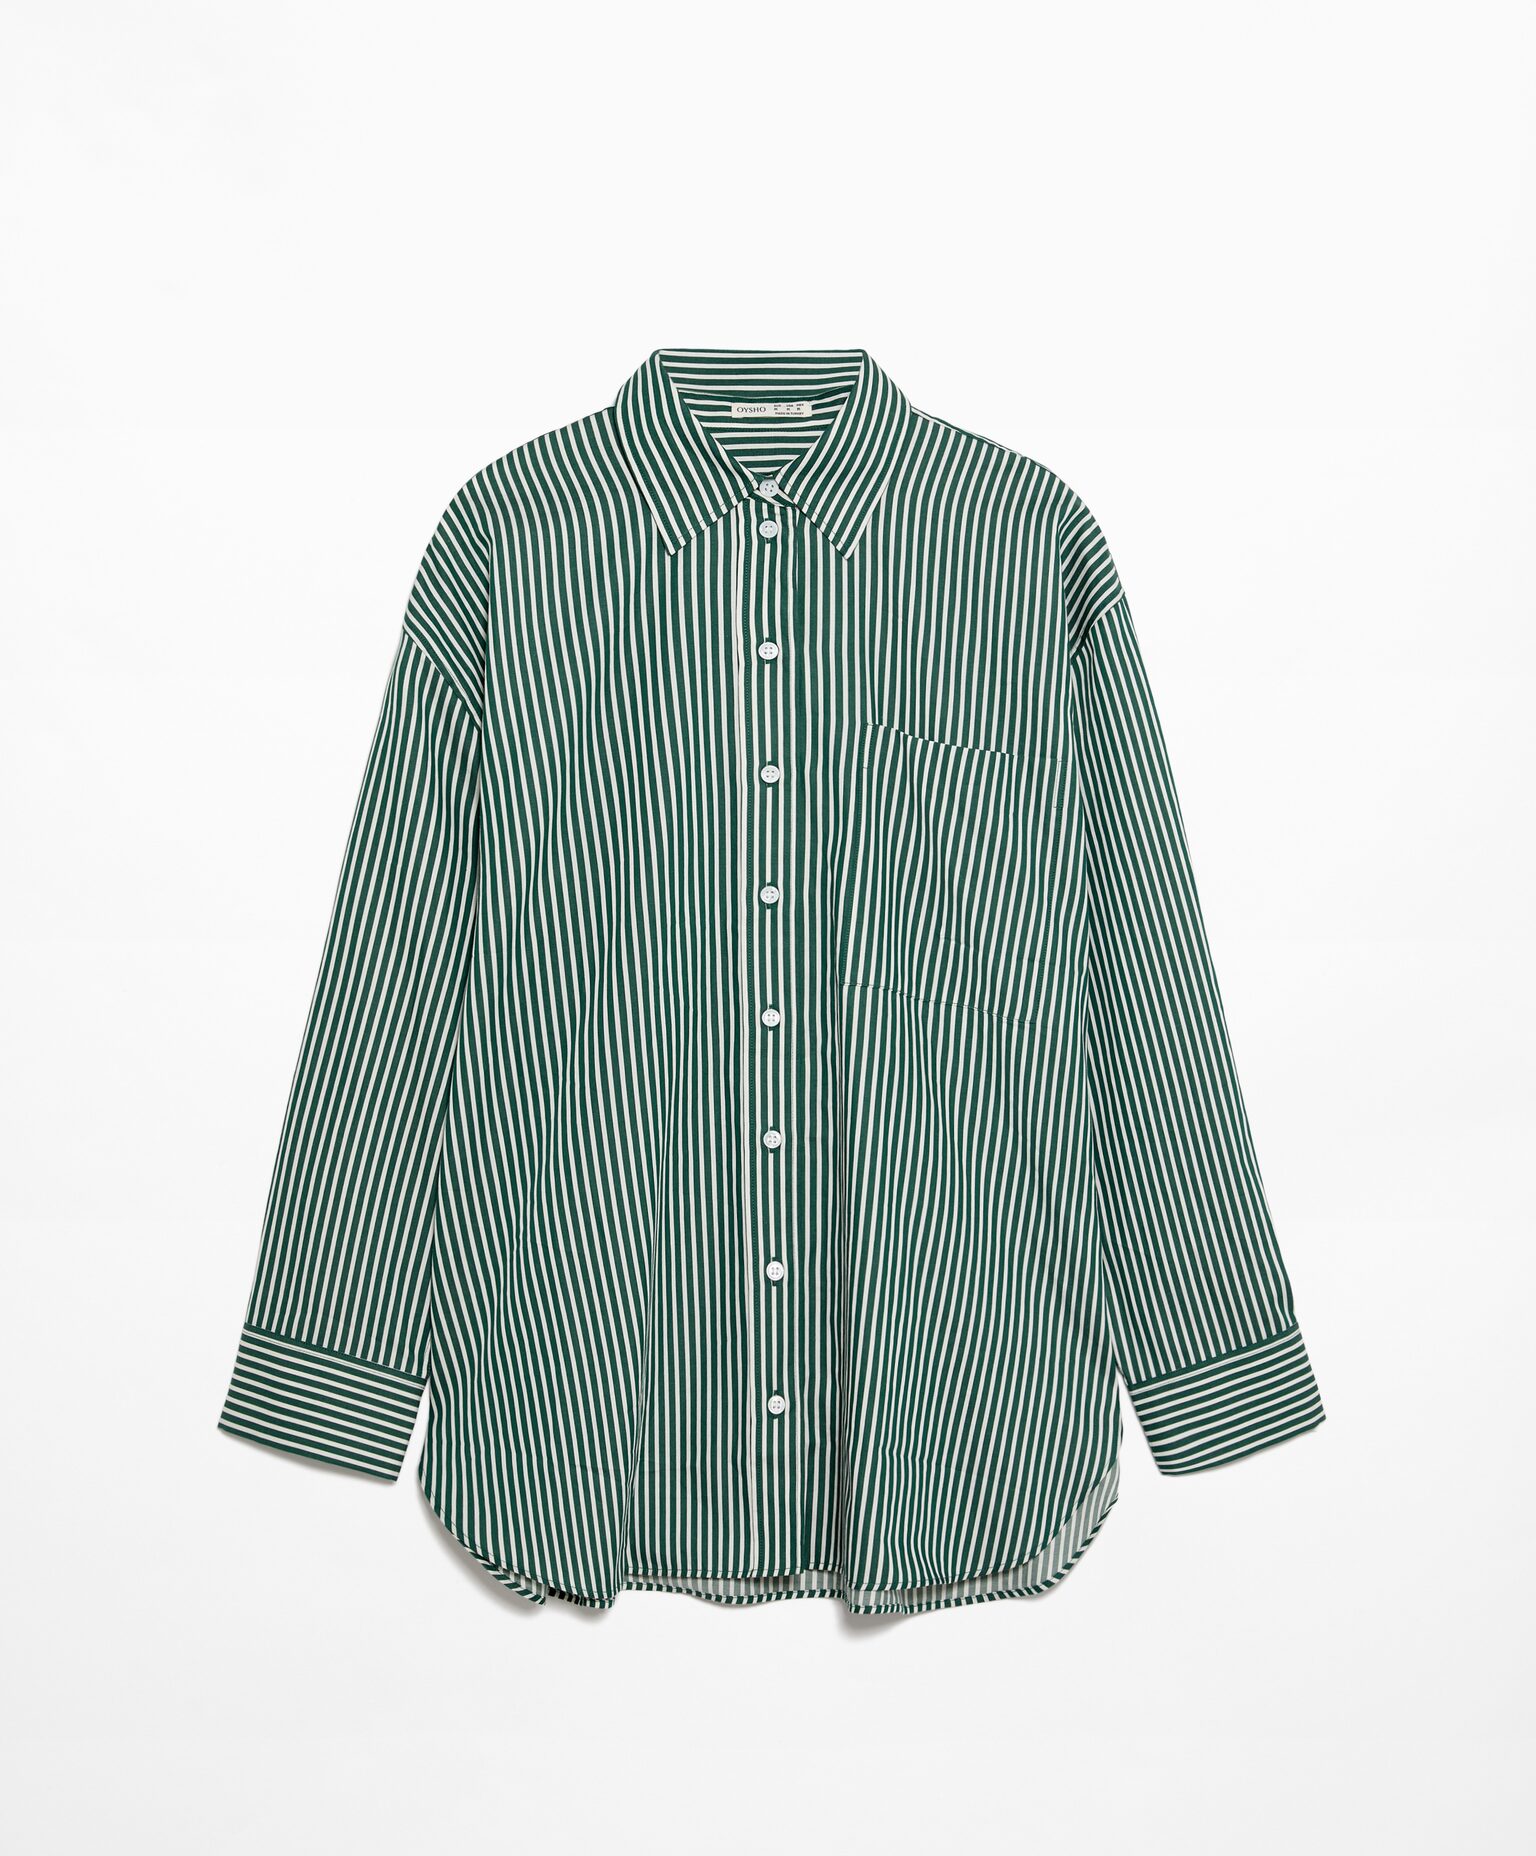 Рубашка Oysho Oversize Long Sleeved, зеленый рубашка в полоску с длинными рукавами xl синий